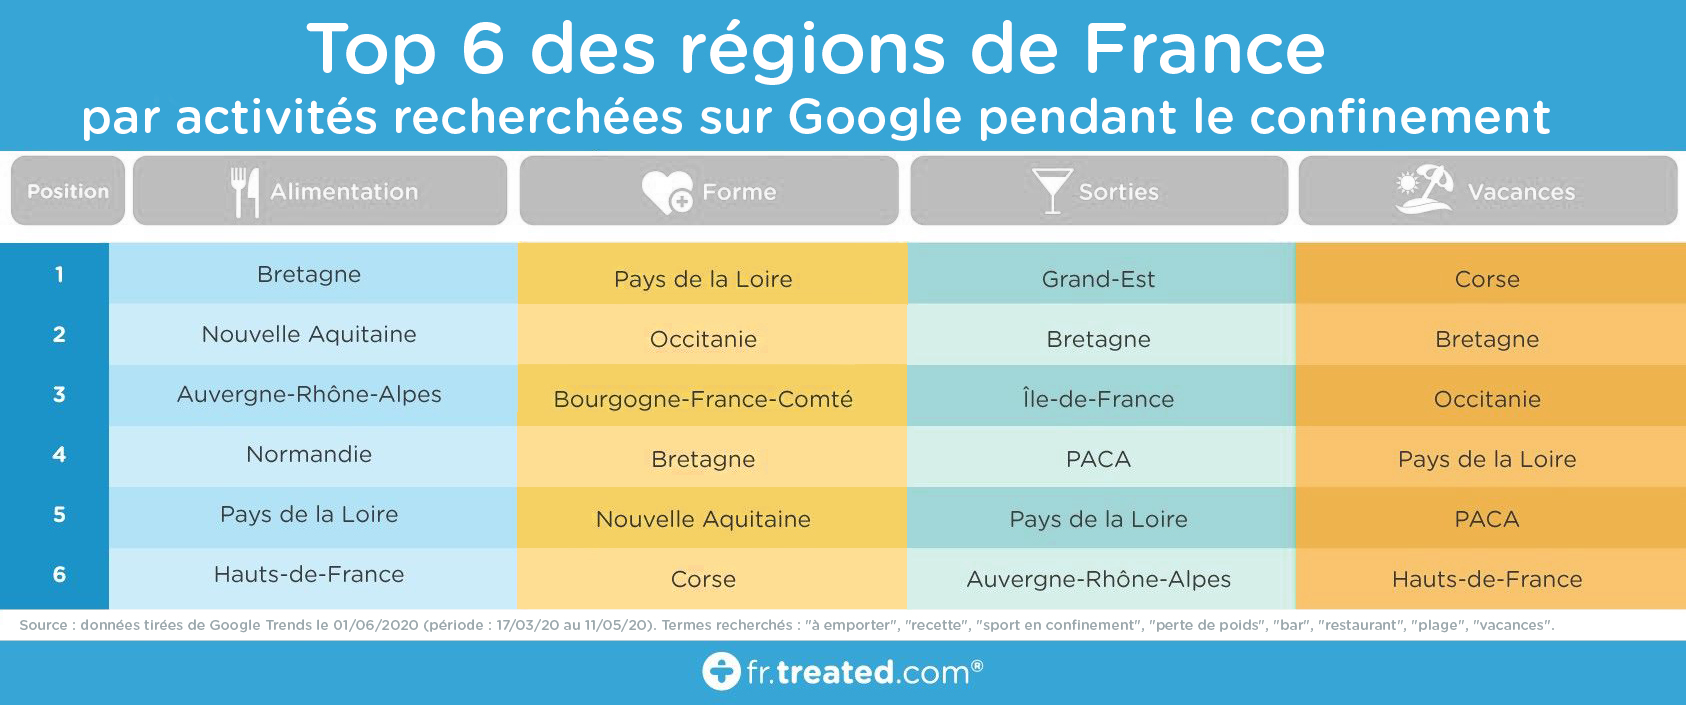 Top 6 des régions de France par activité recherchée sur Google pendant le confinement - Vivami.co